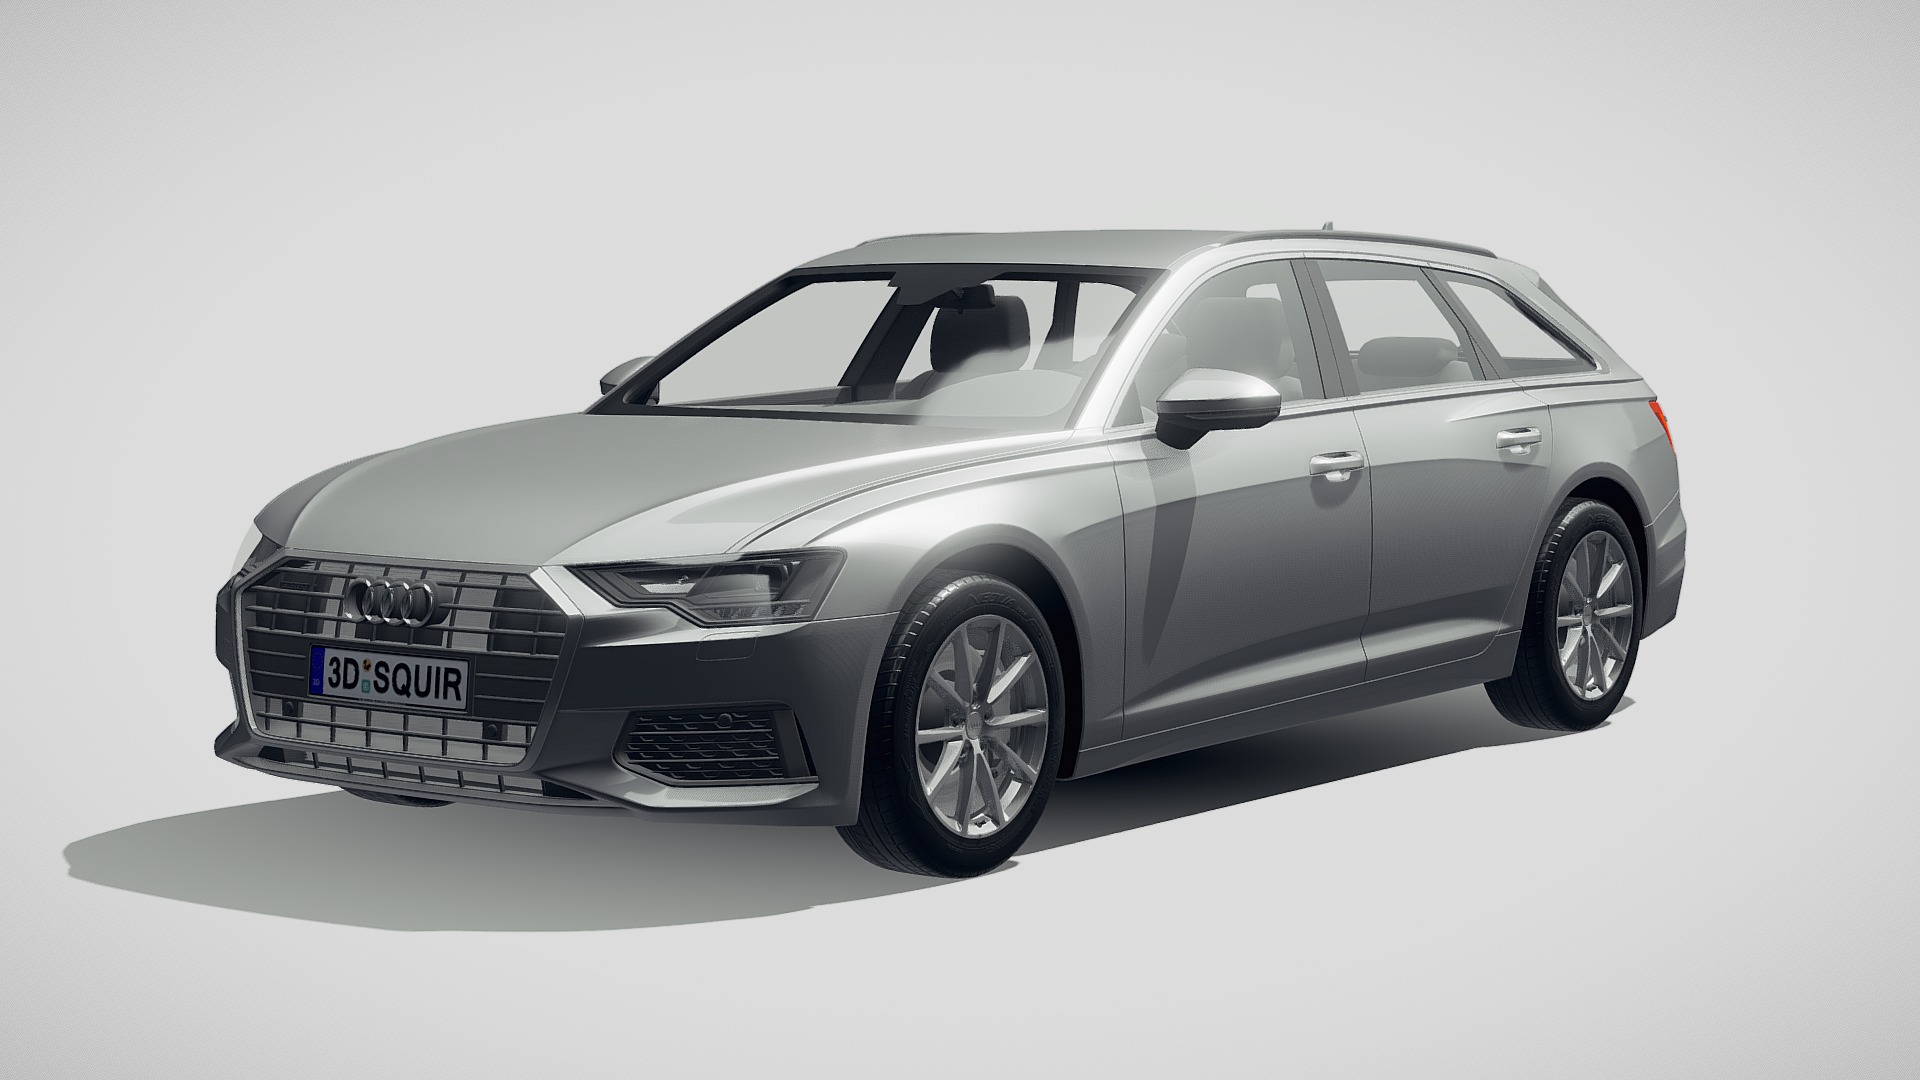 3D model Audi A6 Avant 2019 - This is a 3D model of the Audi A6 Avant 2019. The 3D model is about a silver car with a black top.